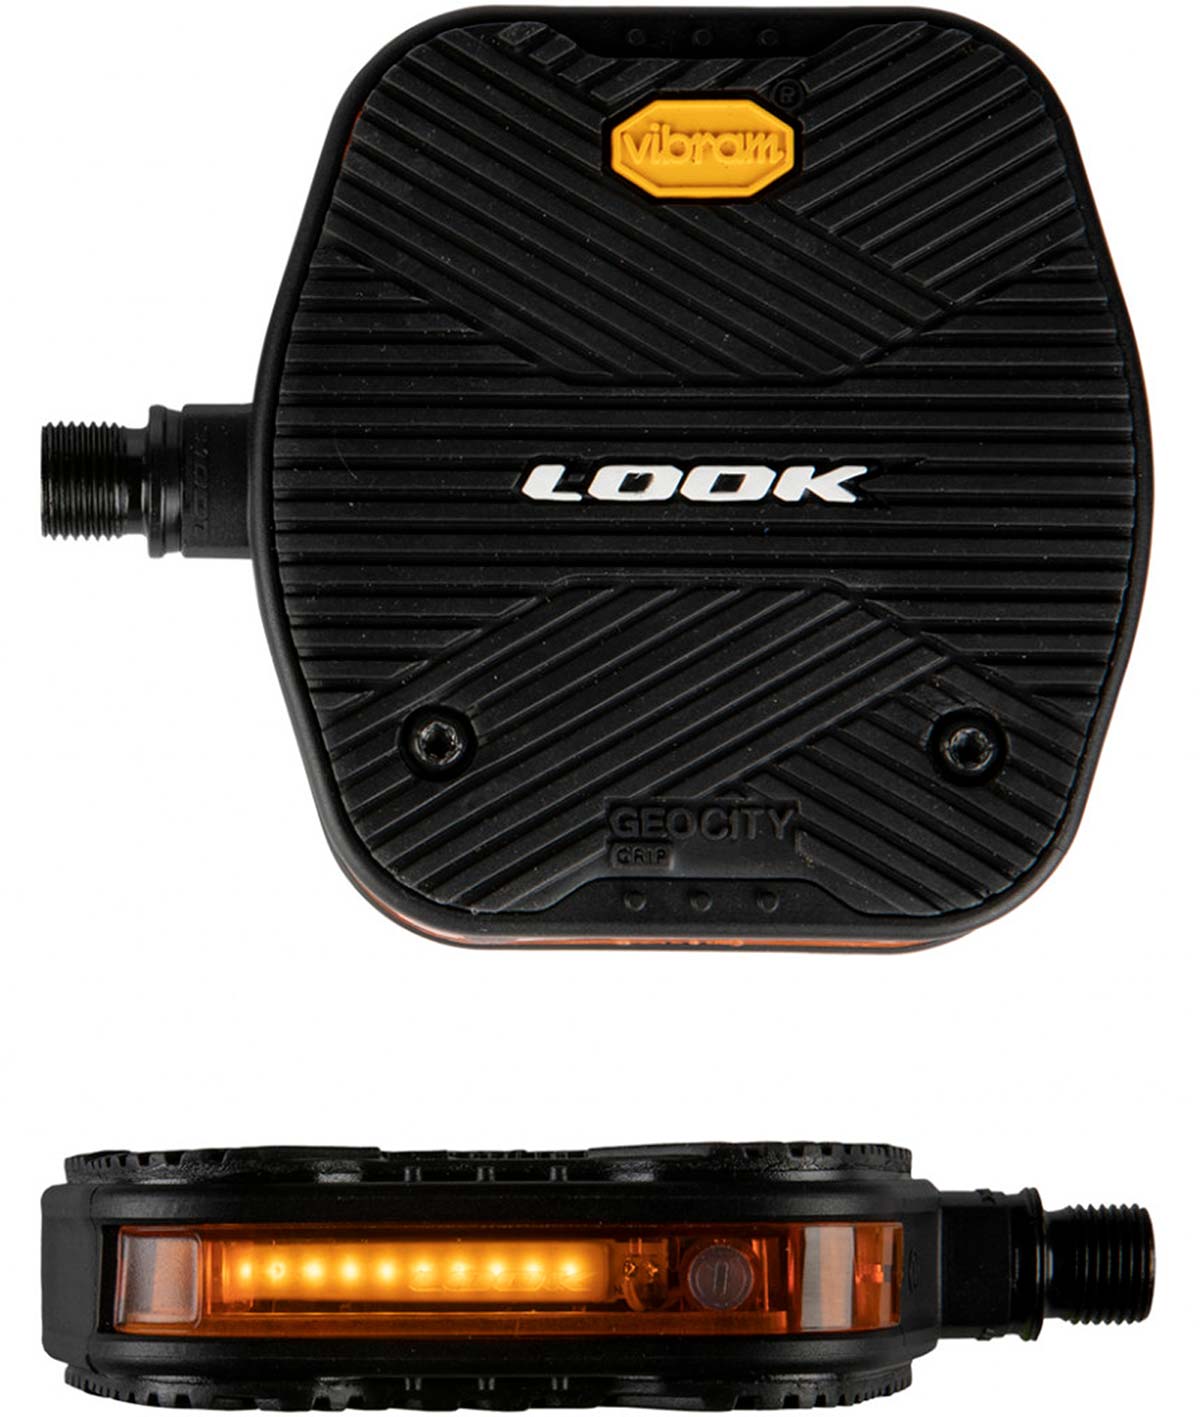 En TodoMountainBike: Look presenta una gama de pedales de plataforma con cubiertas intercambiables, incluyendo un modelo con luz integrada